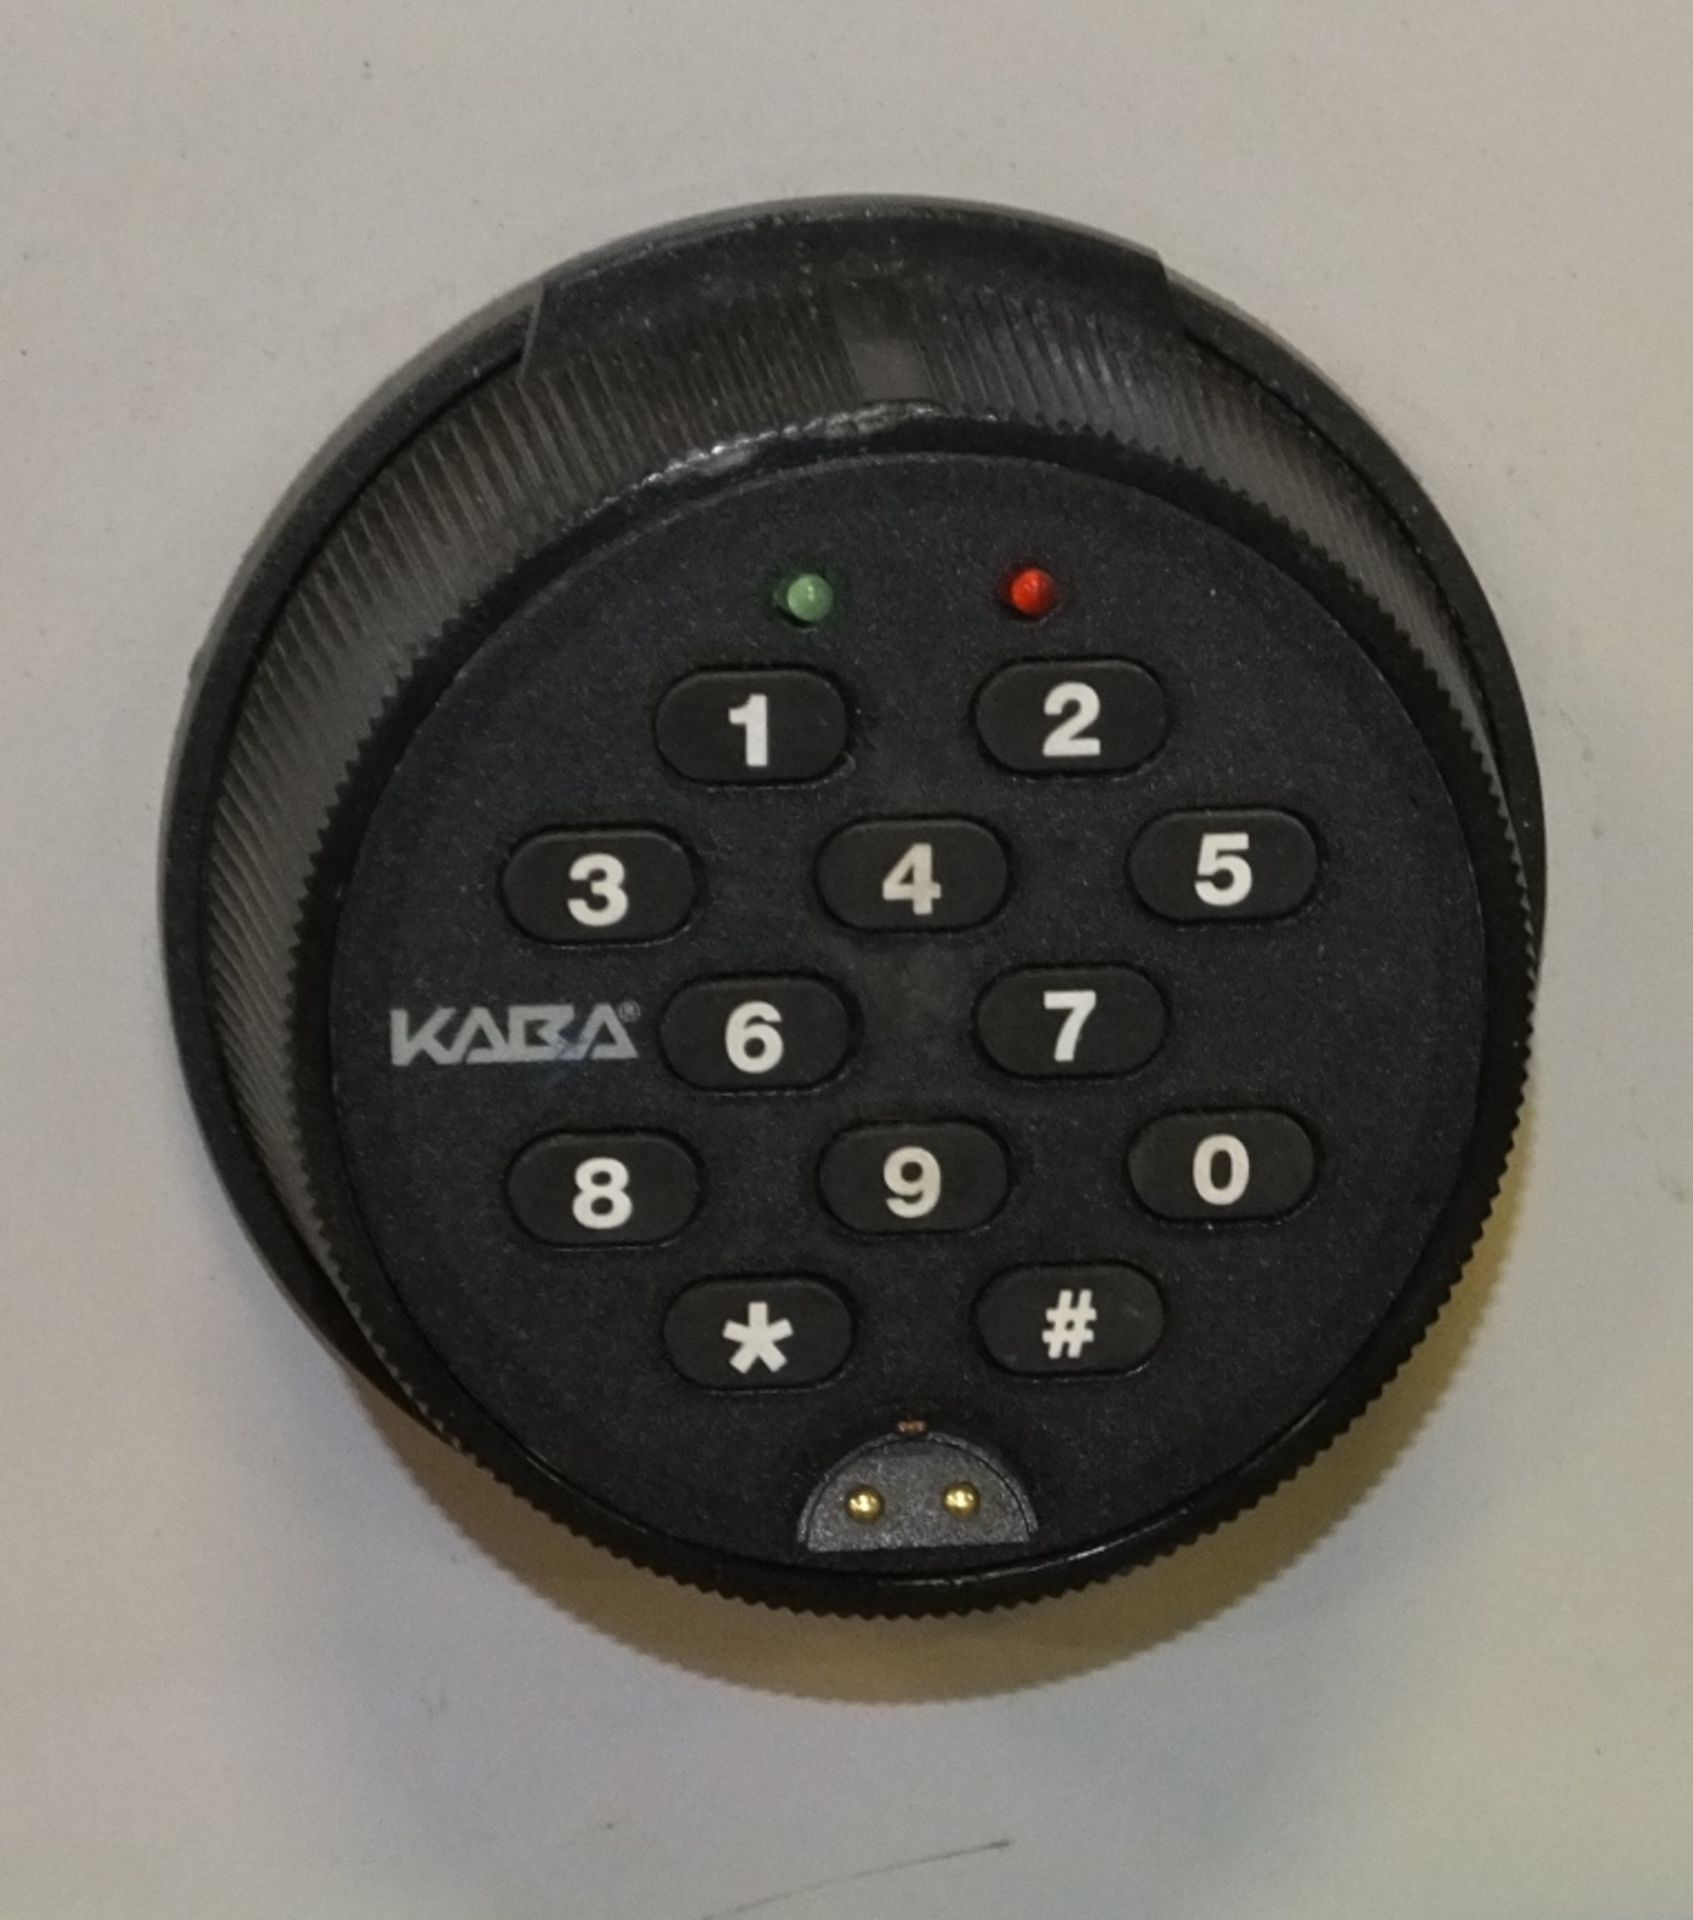 Kaba Electronic Safe - Image 2 of 2